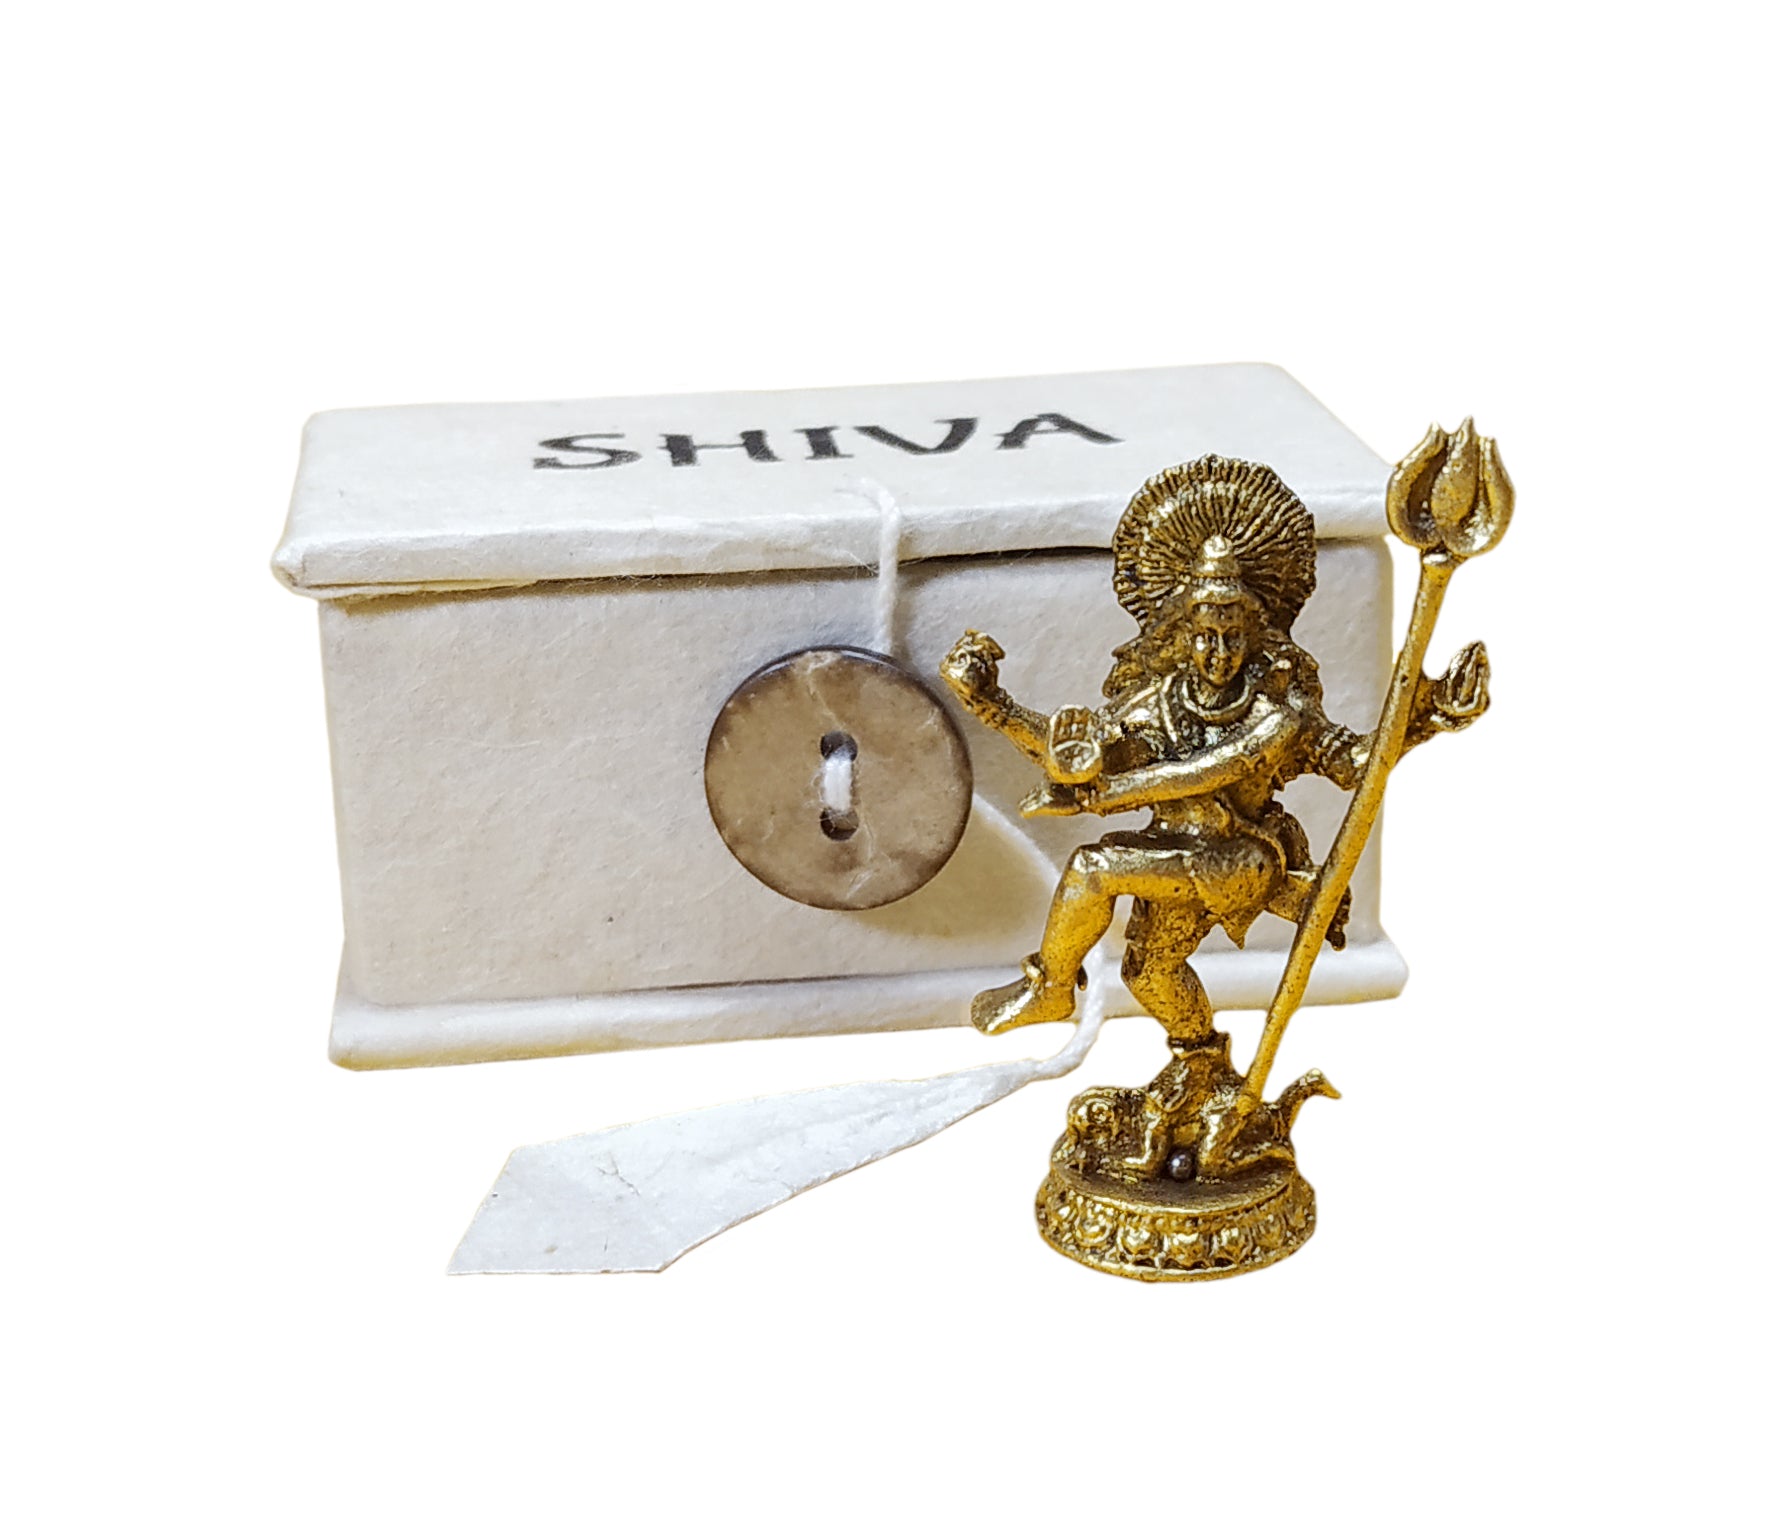 Mini Idols: Shiva. Ganesh. Tara.